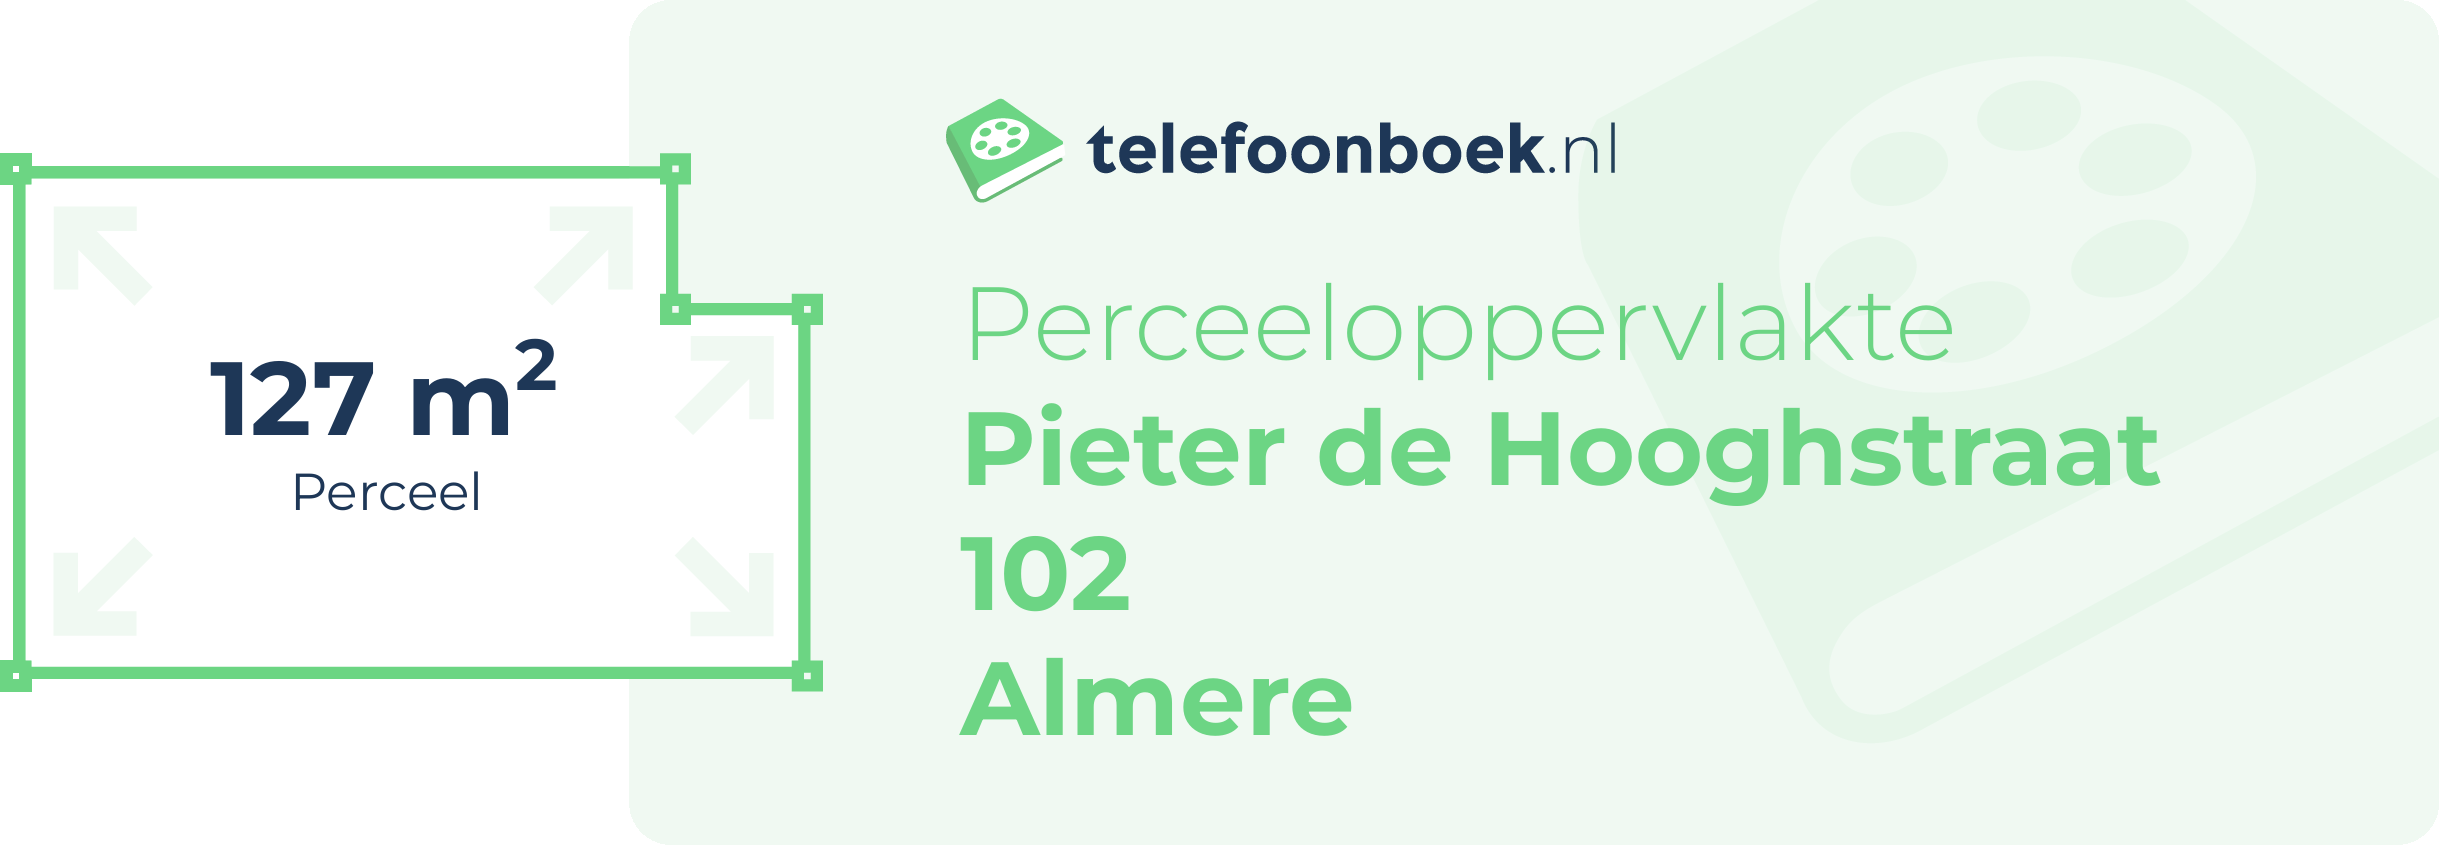 Perceeloppervlakte Pieter De Hooghstraat 102 Almere